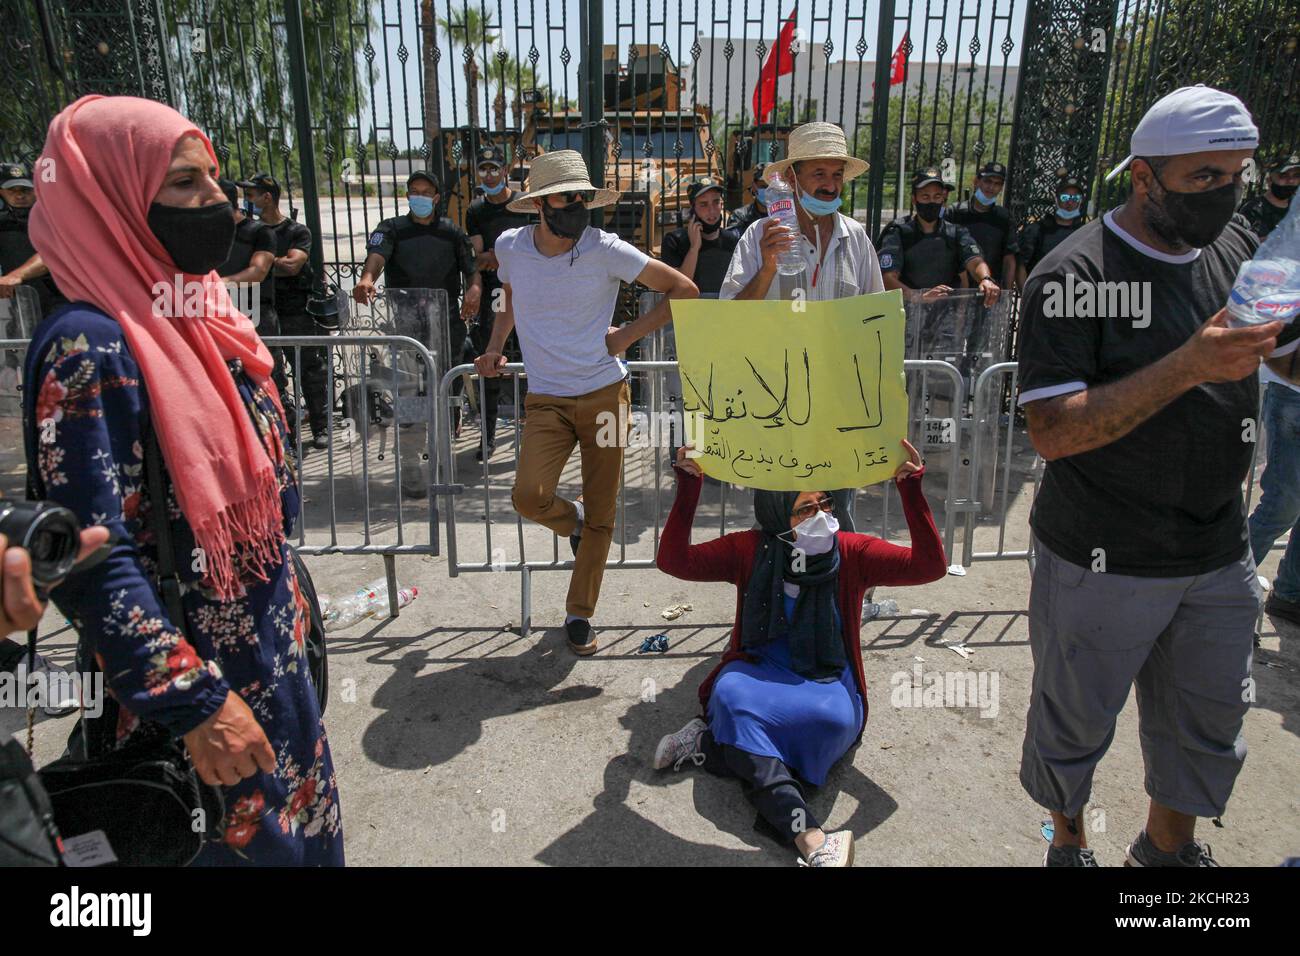 Une femme partisane du parti islamiste Ennahdha pose un écriteau qui se lit dans Arbaic, non au coup d'État, demain le peuple sera fendu, car elle est assise sur le terrain lors d'une protestation assise menée par le président du Parlement tunisien, Rached Ghannouchi, Devant le bâtiment du Parlement tunisien à Bardo, dans la capitale Tunis, Tunisie, sur 26 juillet 2021, après que l'armée l'a empêché d'entrer, Et après la décision du président tunisien Kais de rejeter le gouvernement de Hichem Mechichi, de geler le Parlement et de suspendre l'immunité de tous les membres du Parlement. (Photo de Chehly Ben I Banque D'Images